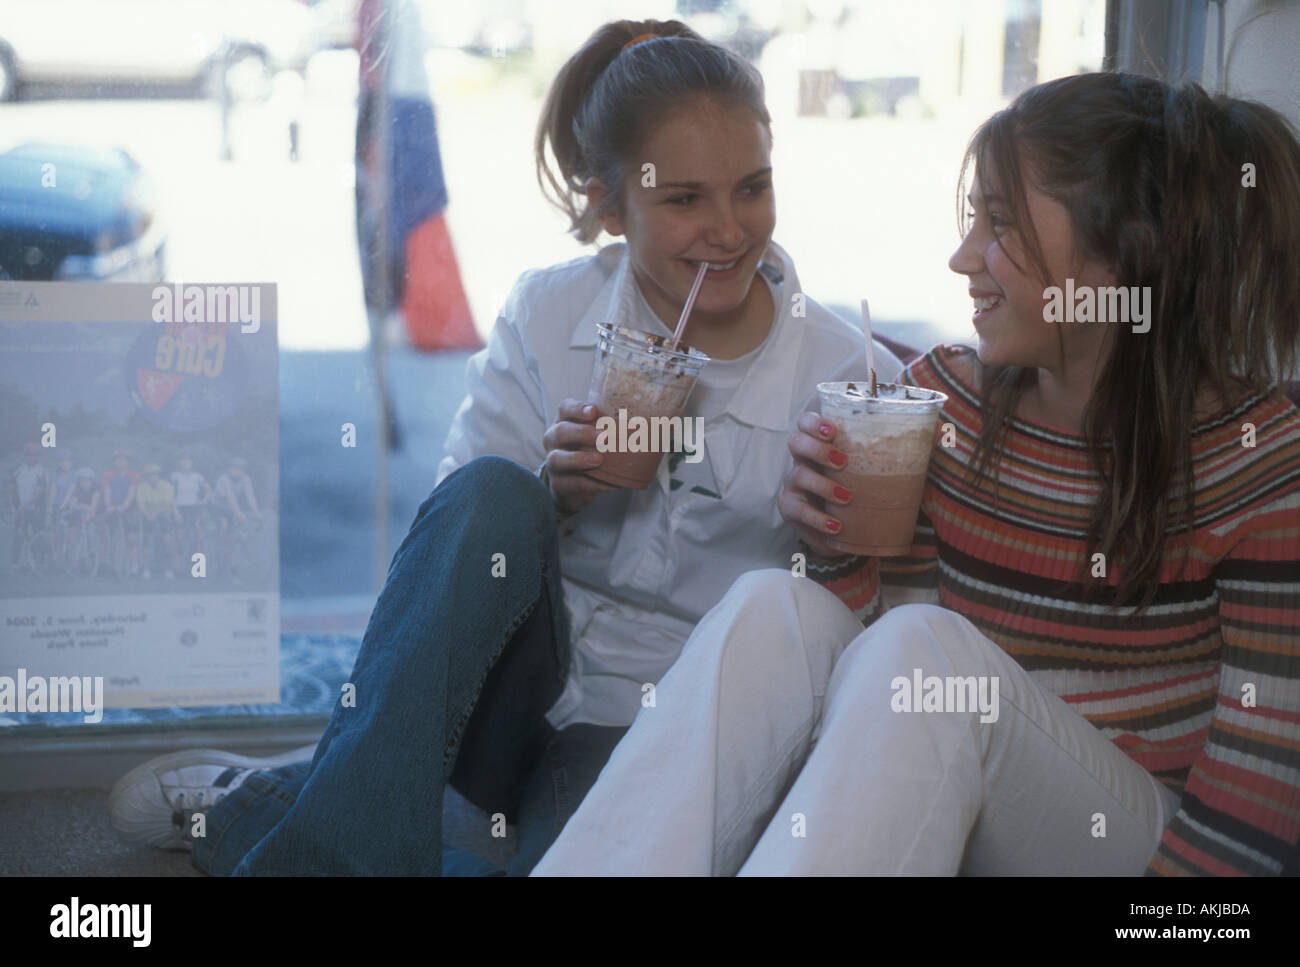 Junge Mädchen in Malz-Shop Stockfoto